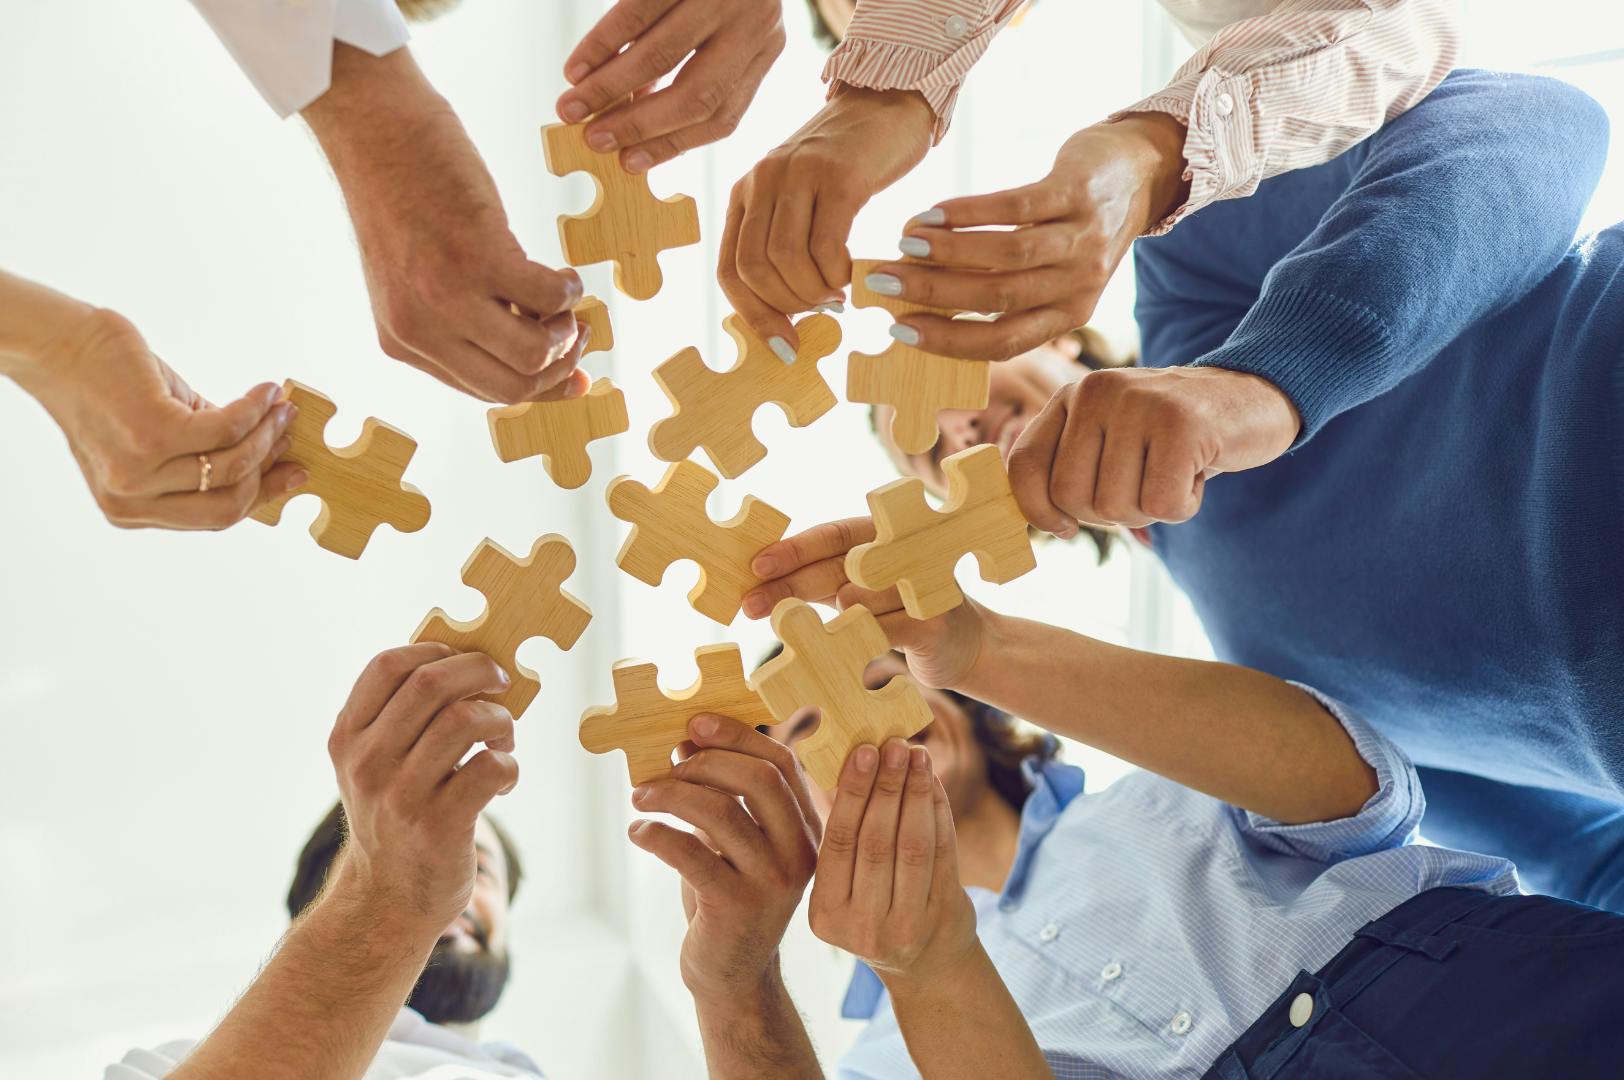 Corporate team building puzzle game